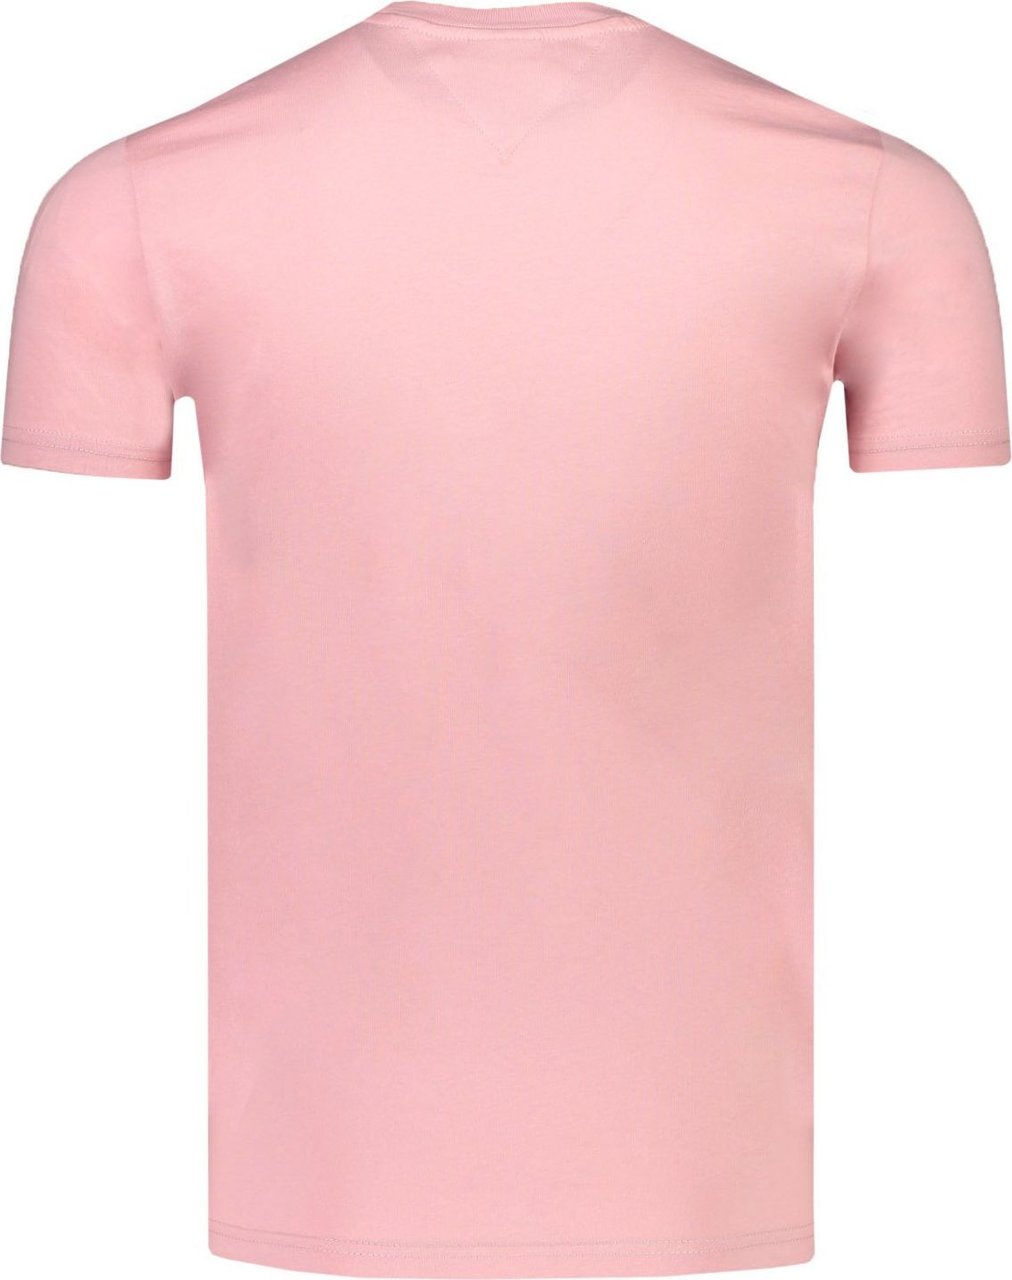 Tommy Hilfiger T-shirt Roze Roze